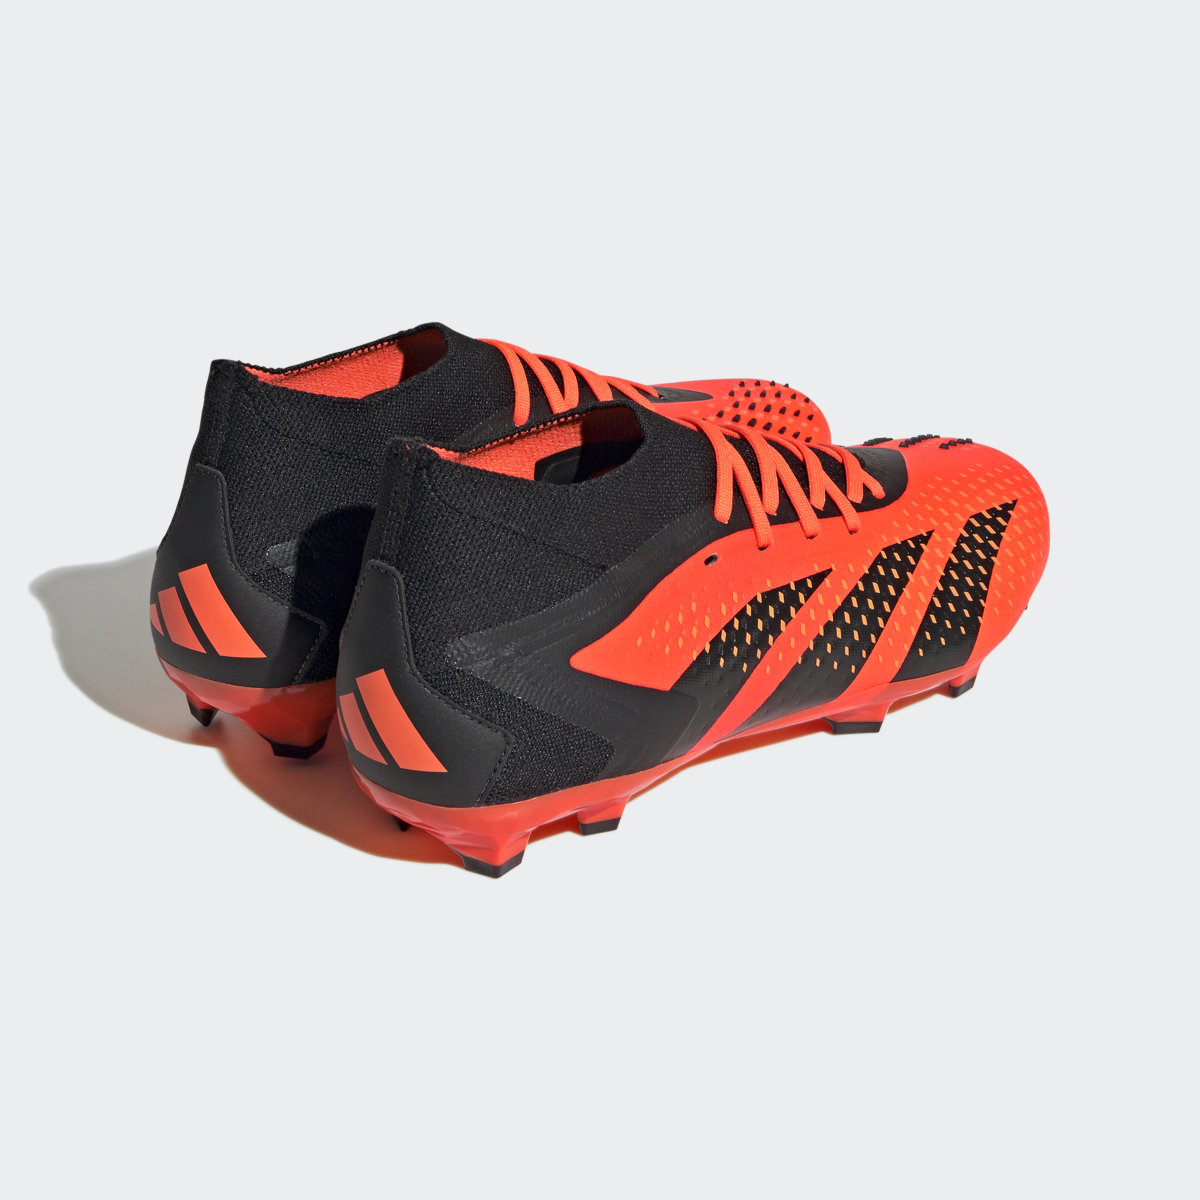 Adidas Calzado de fútbol Predator Accuracy.2. 6